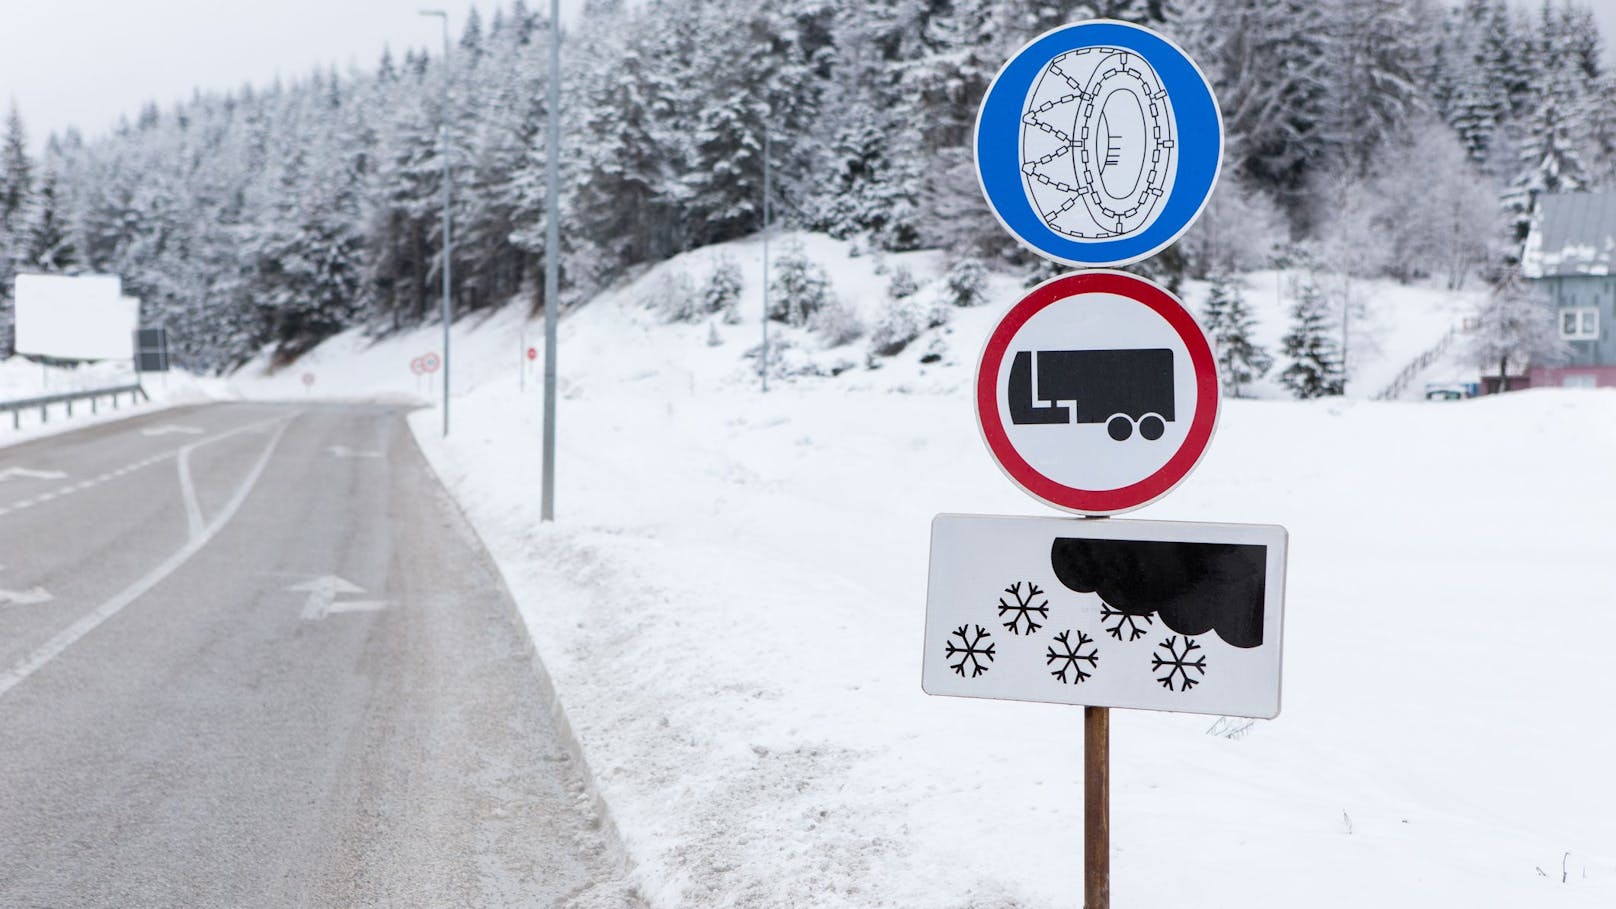 Keine Schneeketten! Lkw-Lenker rutscht von der Straße